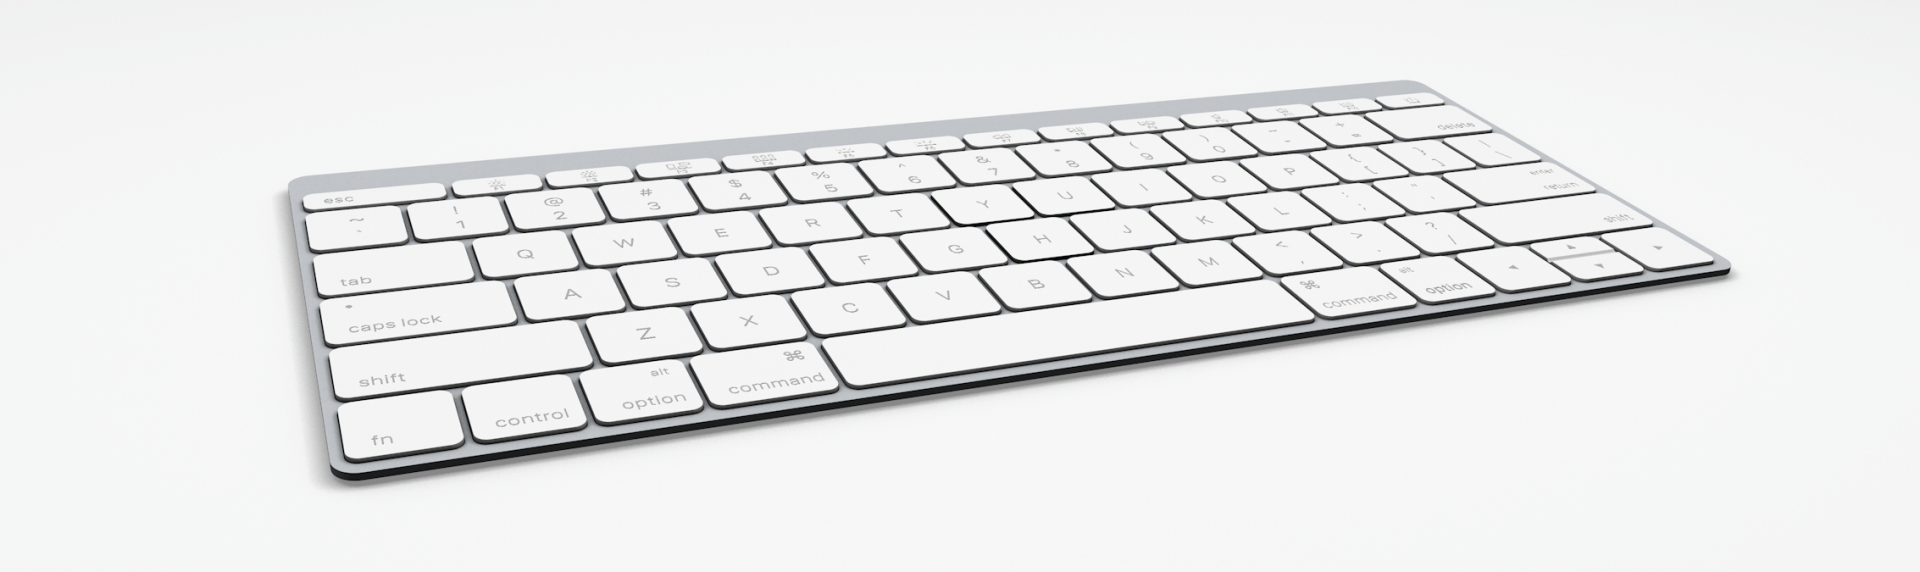 米Apple、｢Magic Keyboard｣に関連する複数のドメインを登録 － 新型キーボードの名称か